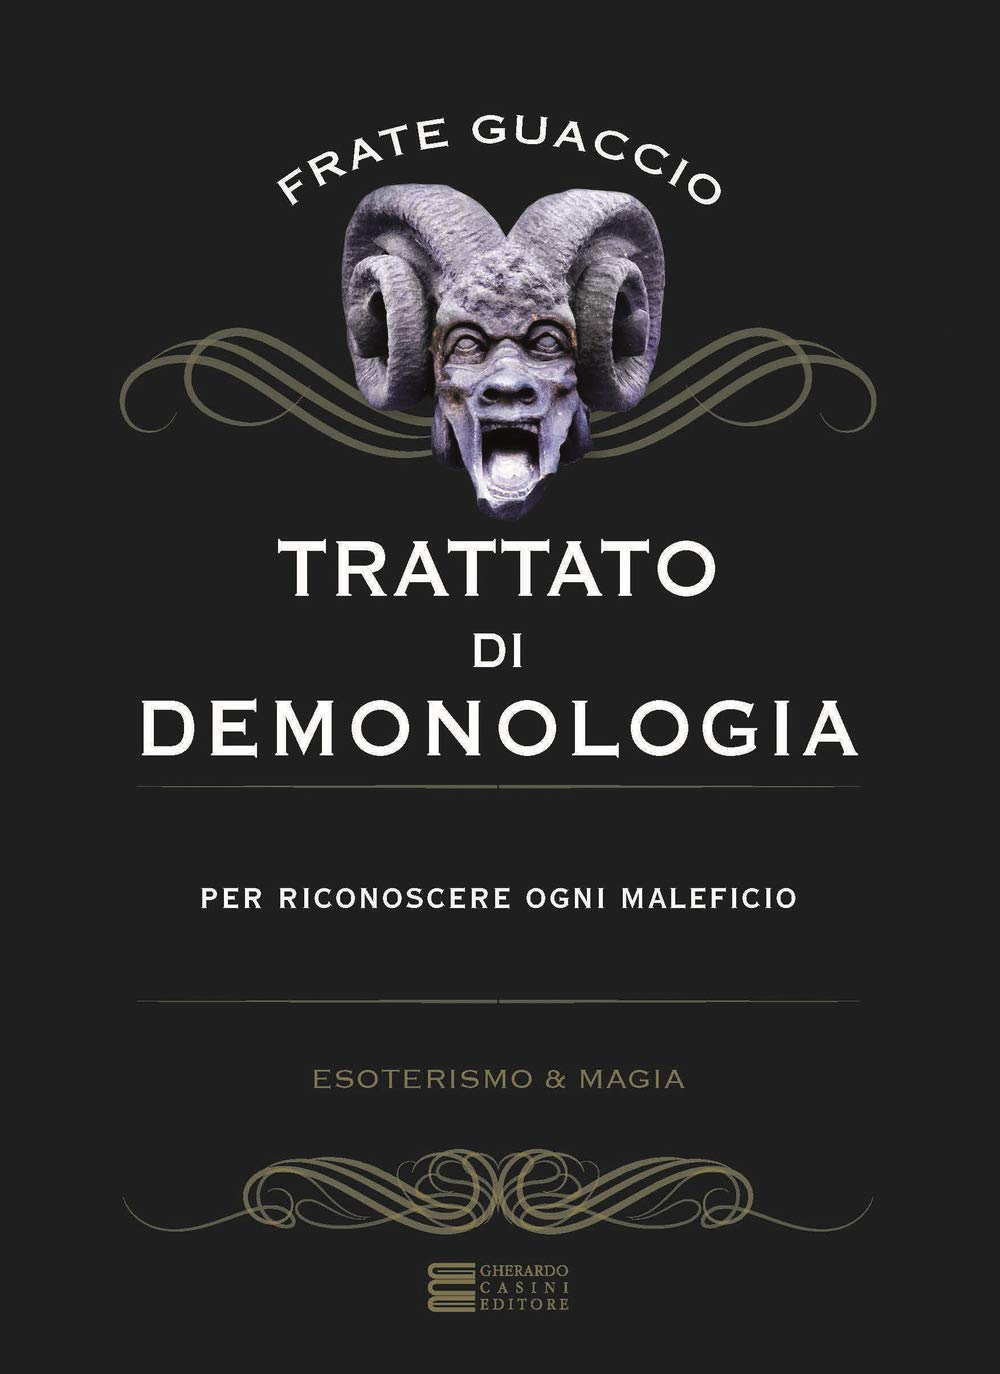 Libri Guaccio Francesco Maria - Trattato Di Demonologia NUOVO SIGILLATO, EDIZIONE DEL 19/03/2020 SUBITO DISPONIBILE